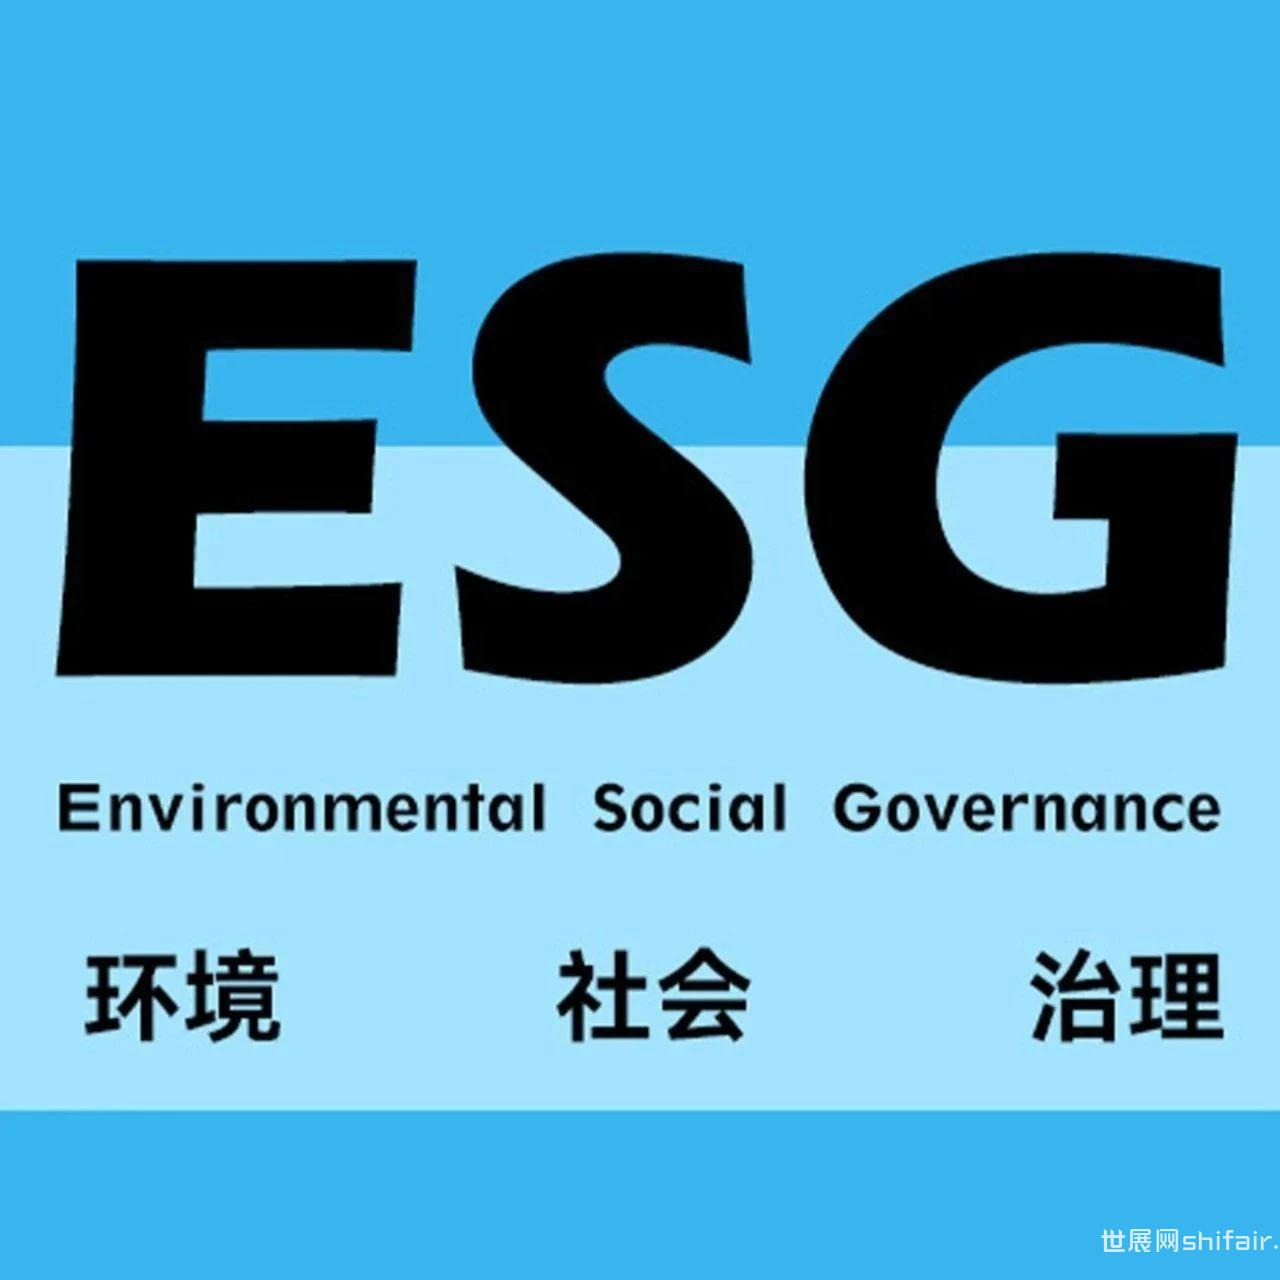 关于联合征集中国ESG指数样本企业暨案例的通知